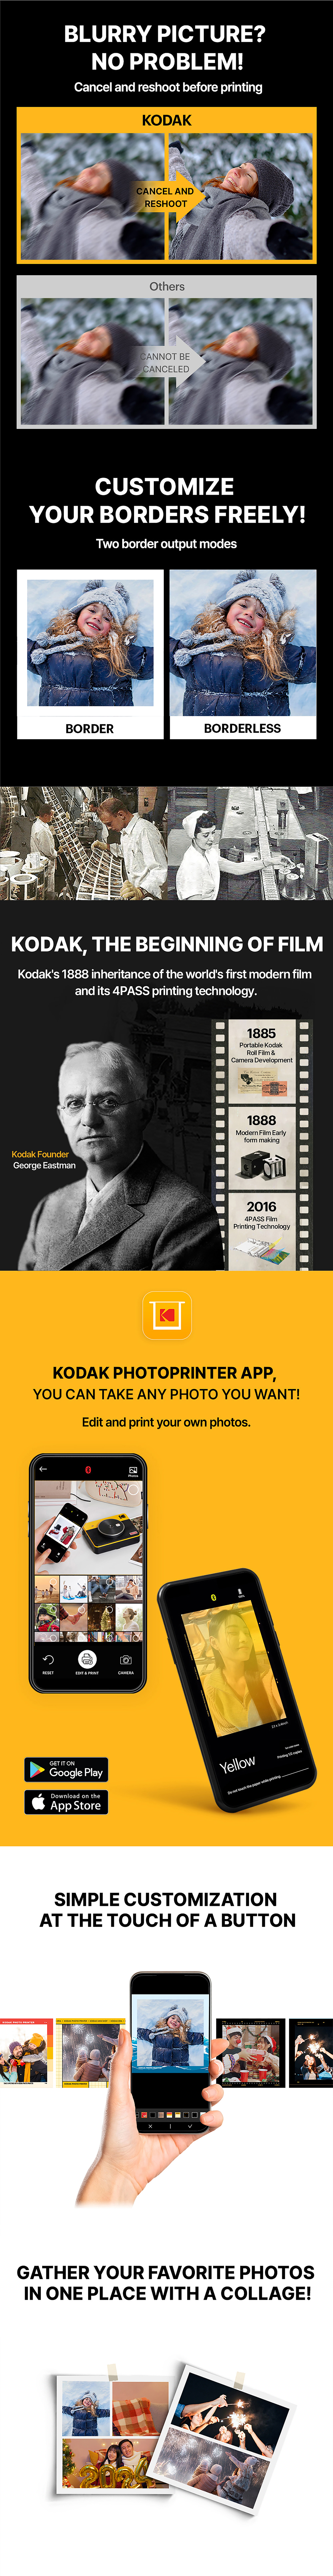 Aparat Kodak Mini Shot 3 Retro Yellow + 2 wkłady (60 zdjęć)